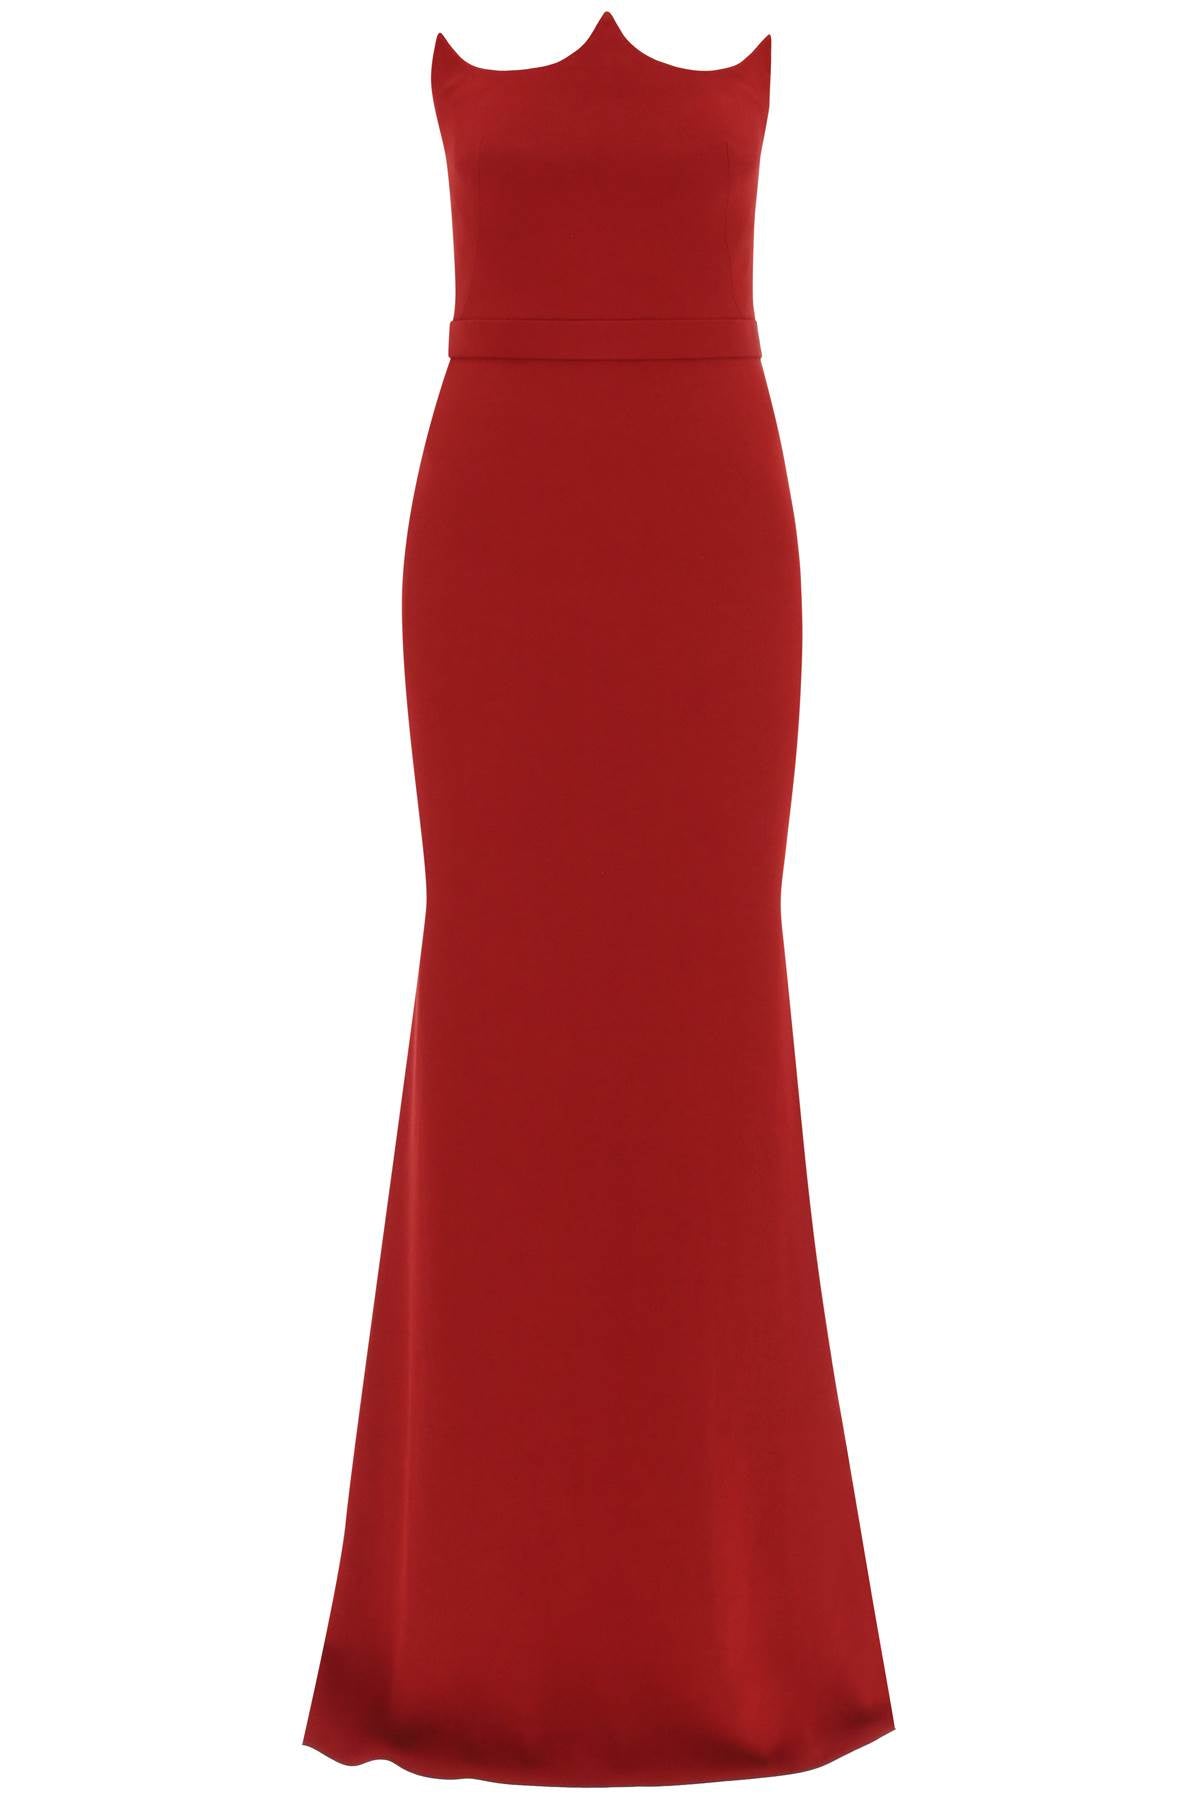 ALEXANDER MCQUEEN Red Peak Corset Evening Dress for Women